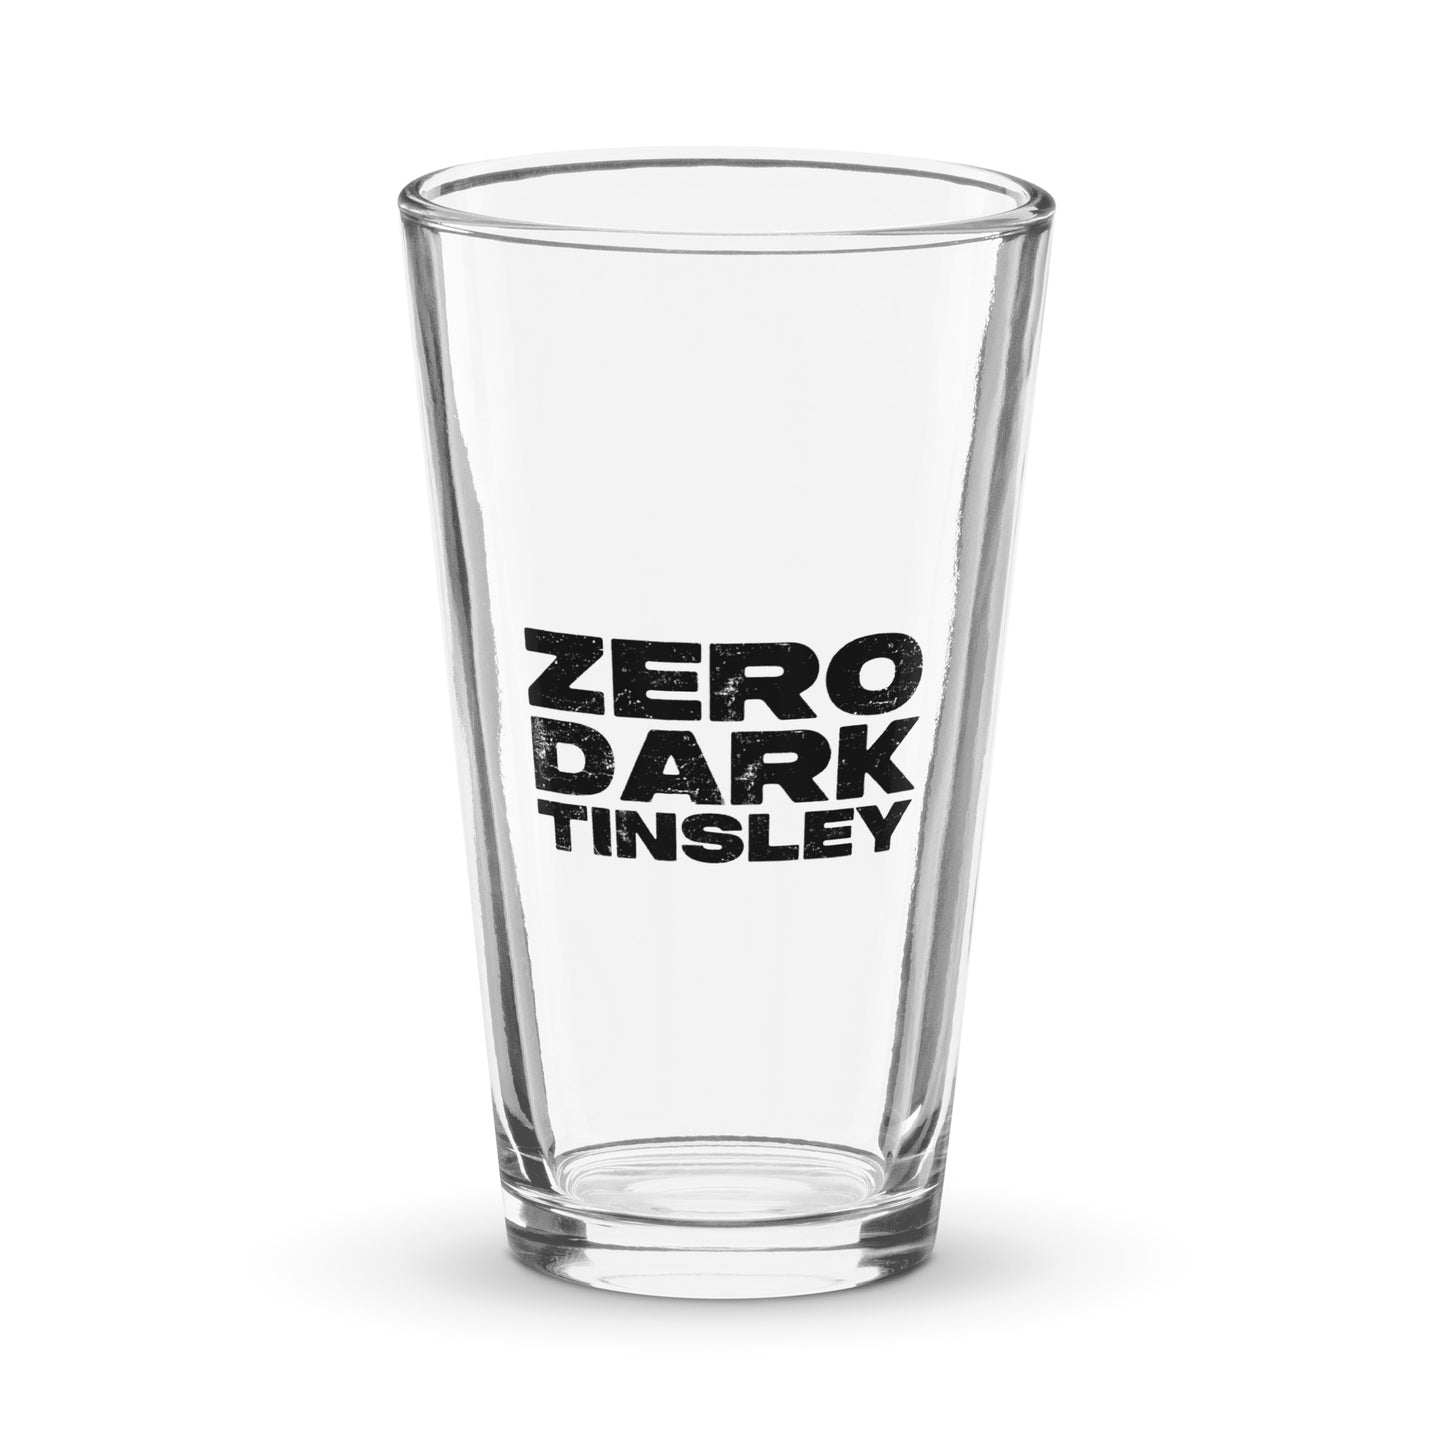 Zero Dark Shaker pint glass